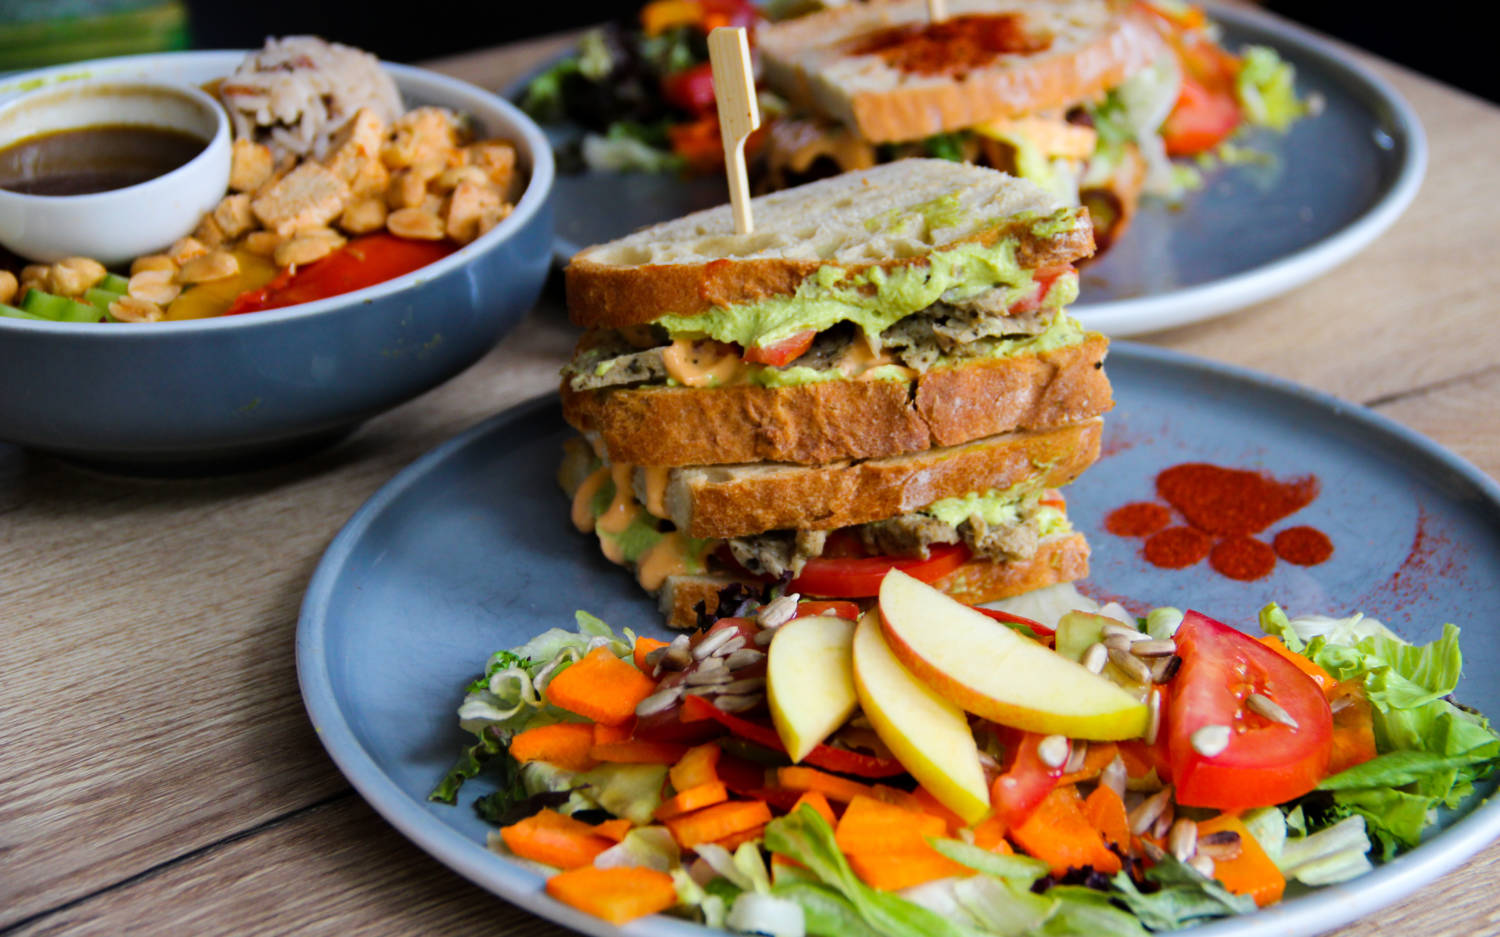 Gesunde, vegane Gerichte stehen auf der Speisekarte des Katzentempels / ©Katzentempel